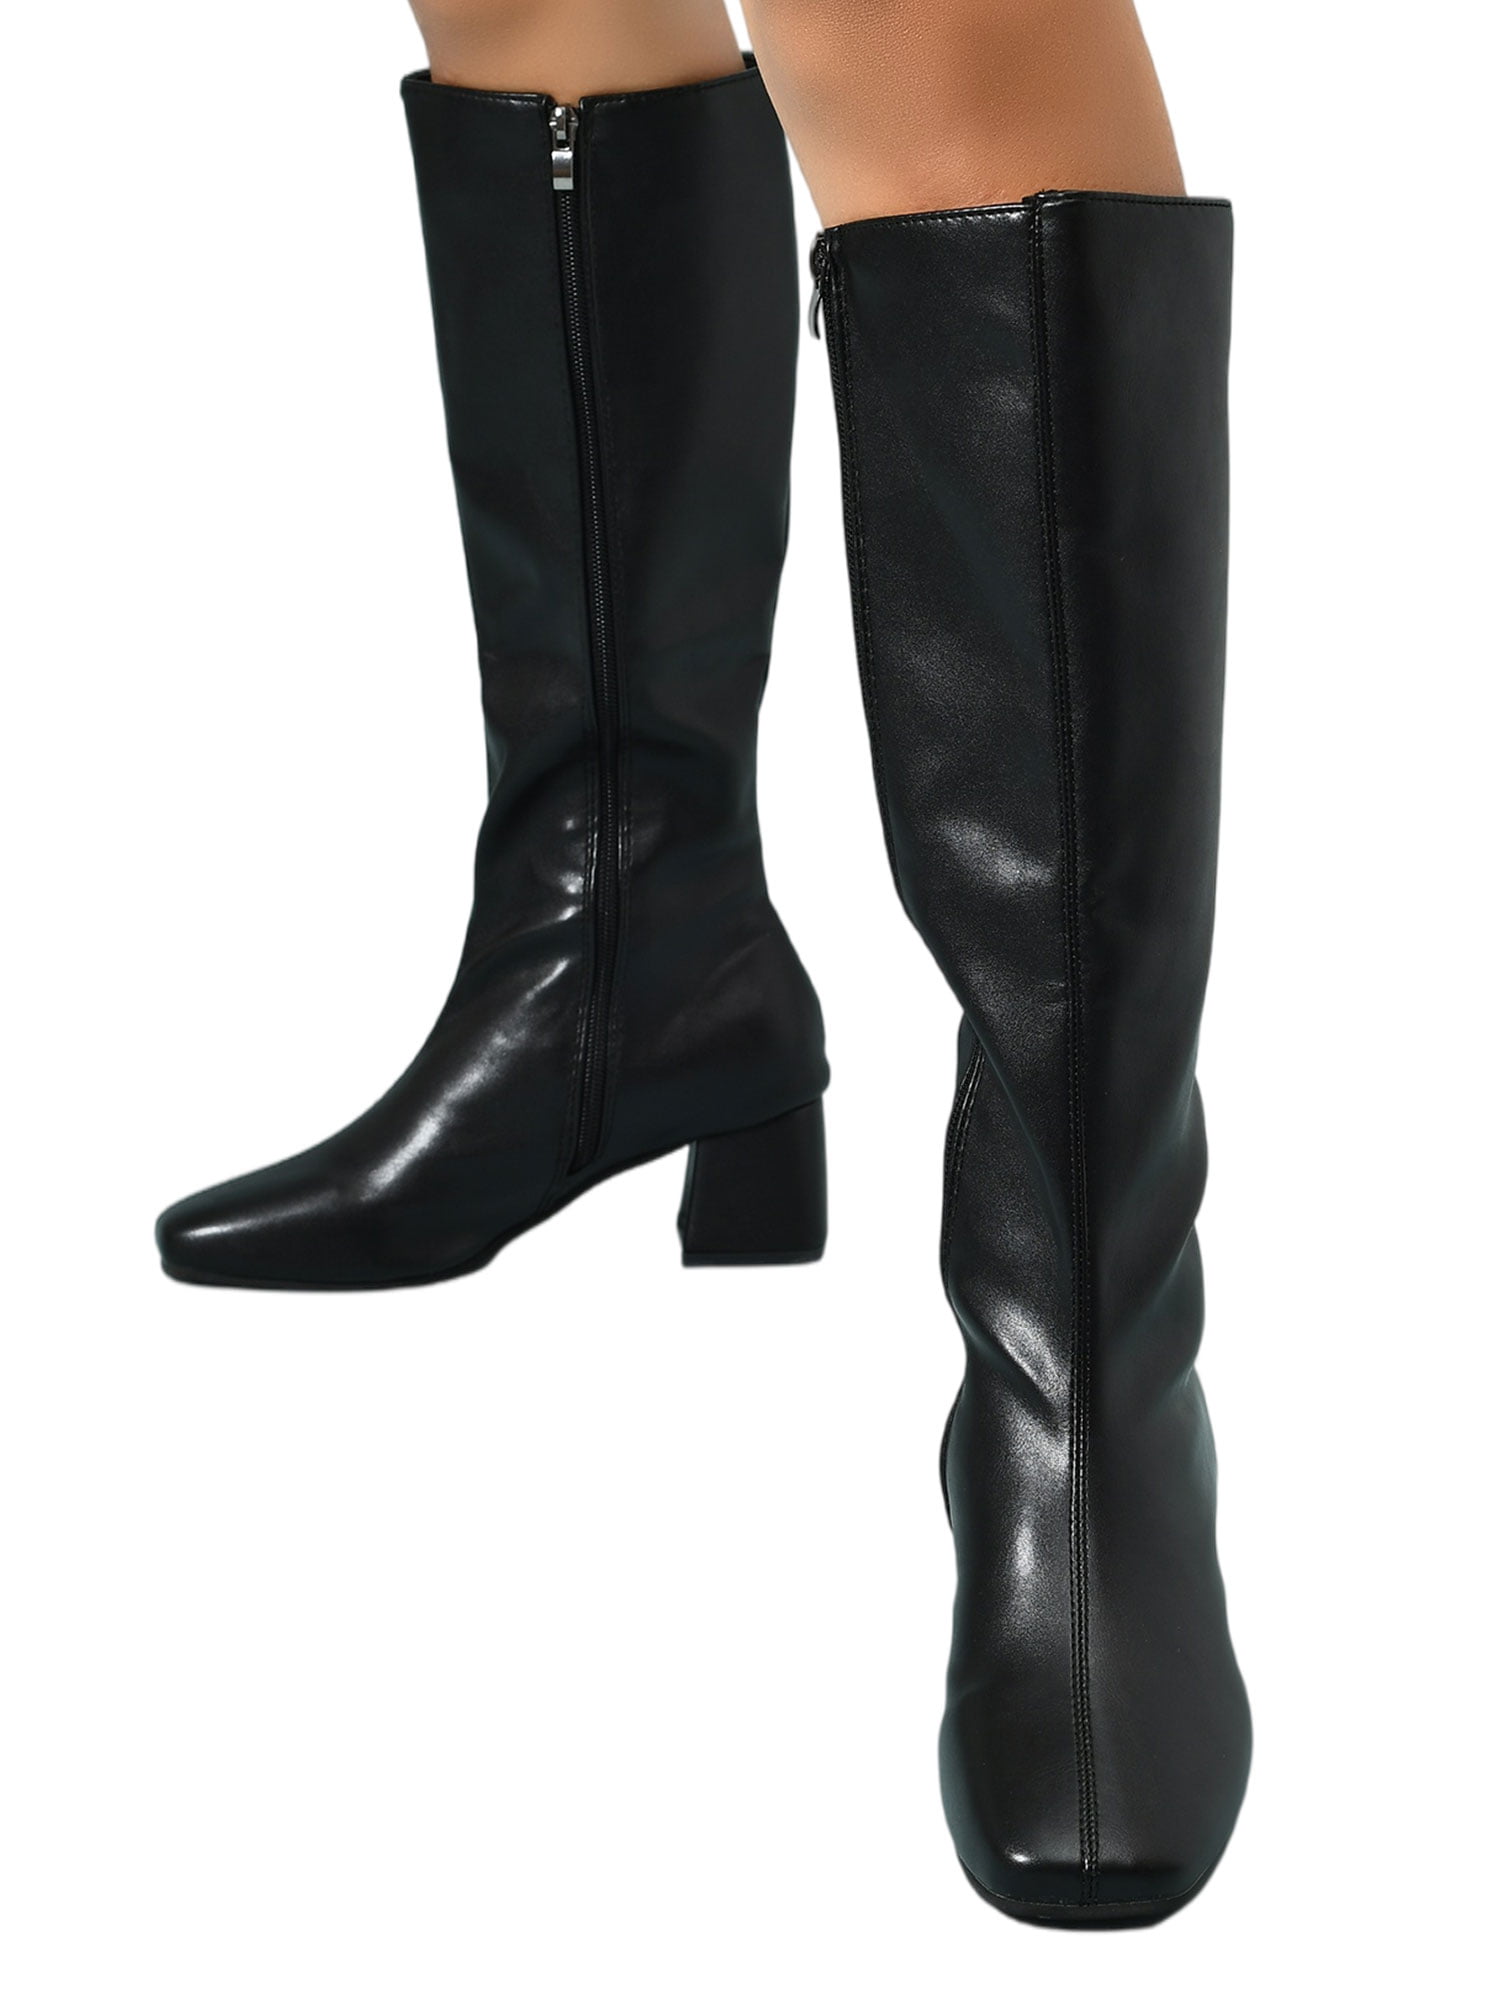 New women's shoes high shaft knee high 2 styles boot side zipper black winter 